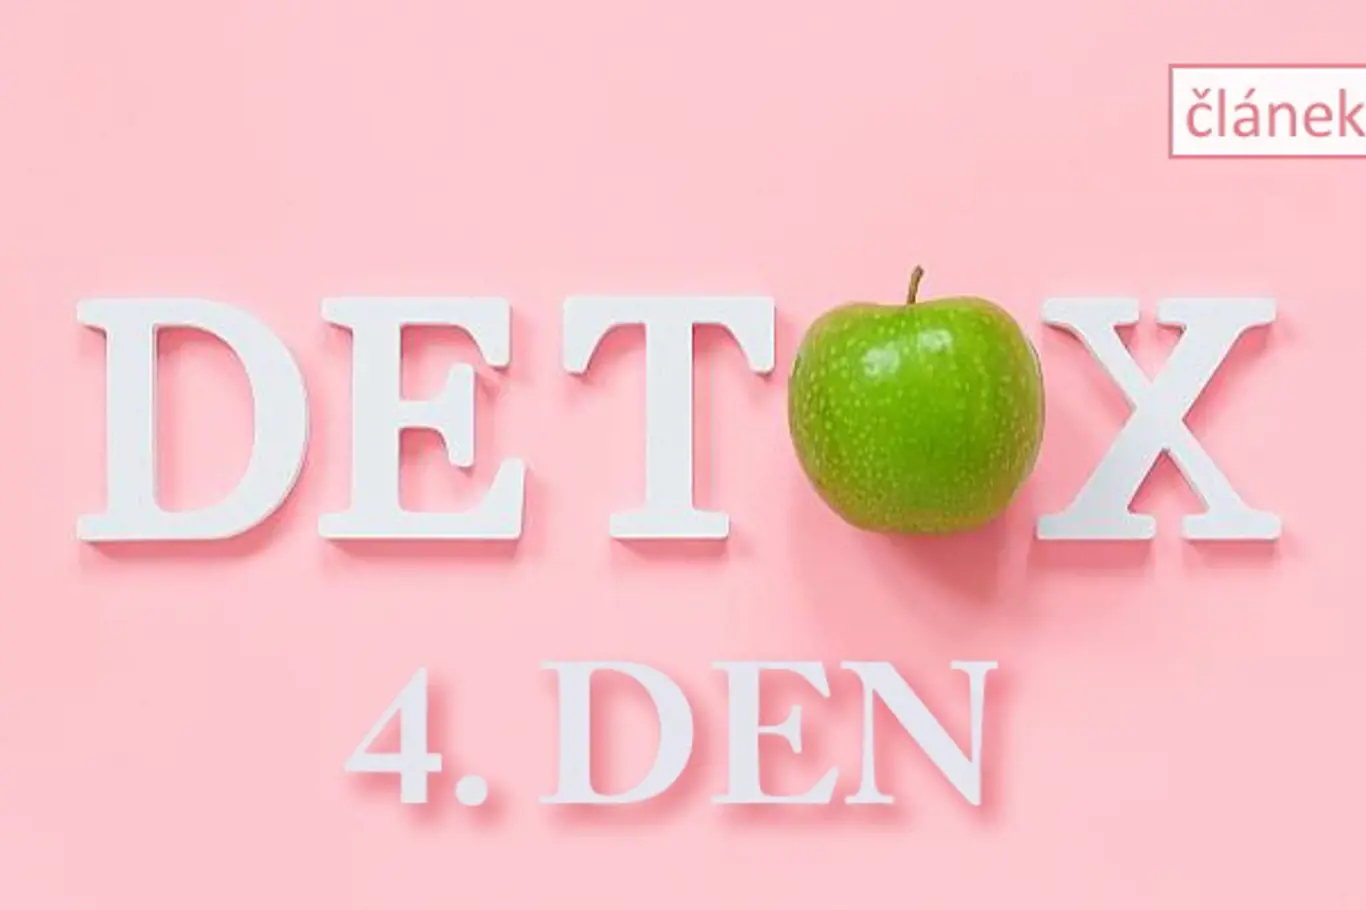 detox článek 4